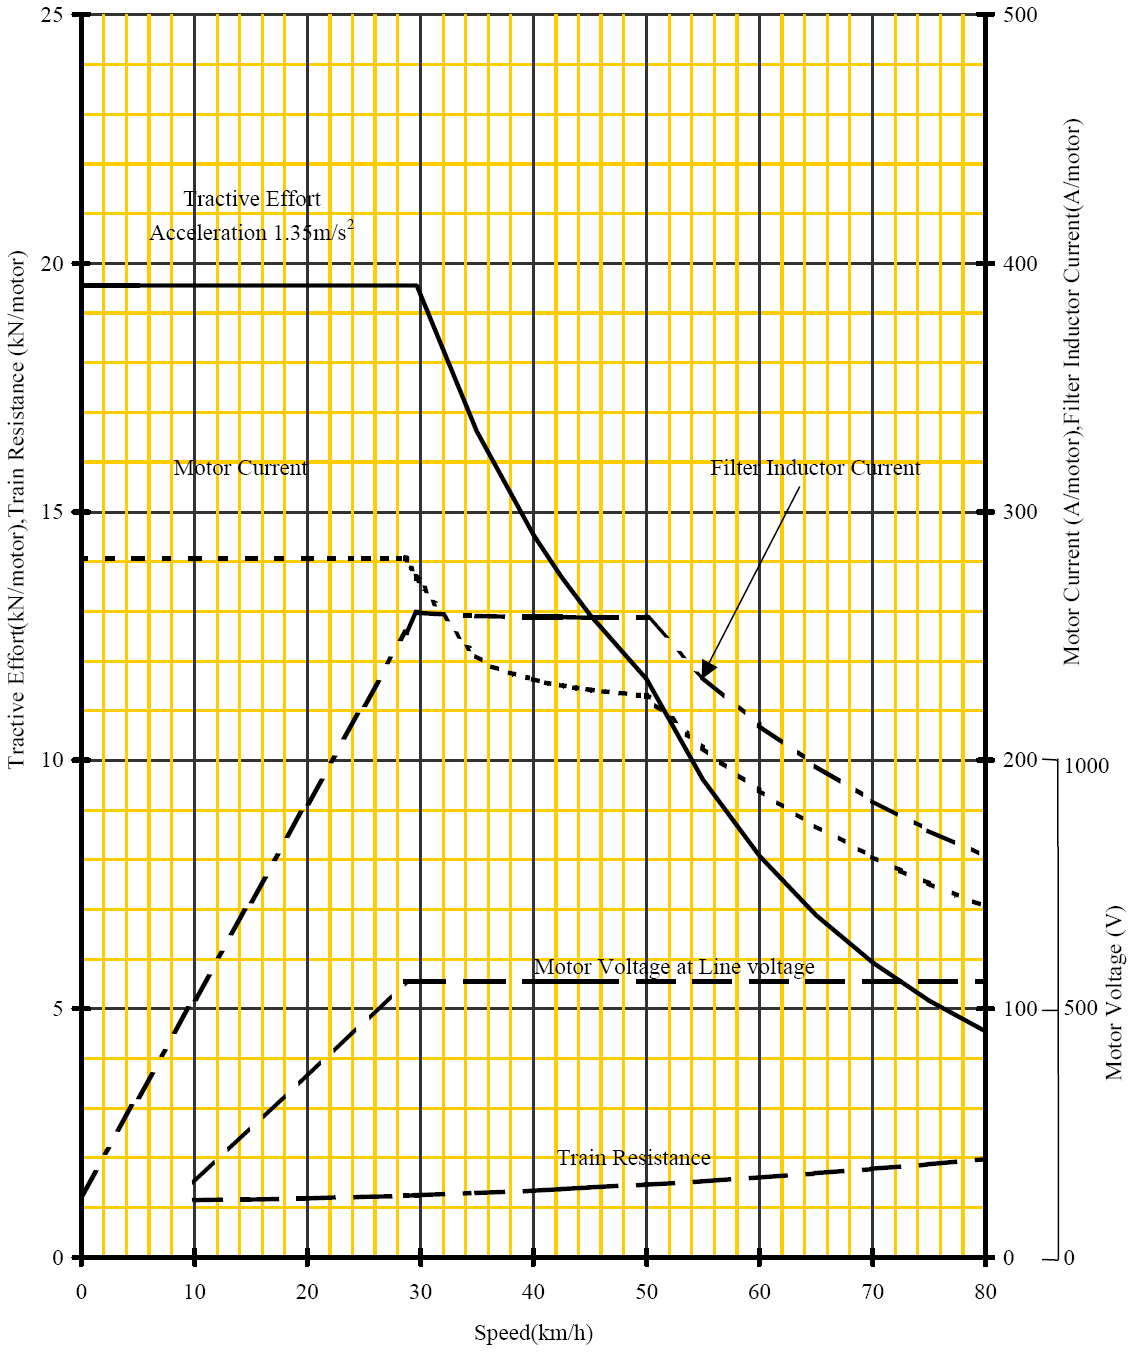 3.2 Curvas de comportamiento 3.2.1 Curvas de comportamiento etapa de tracción La curva adjunta en la Figura 3.